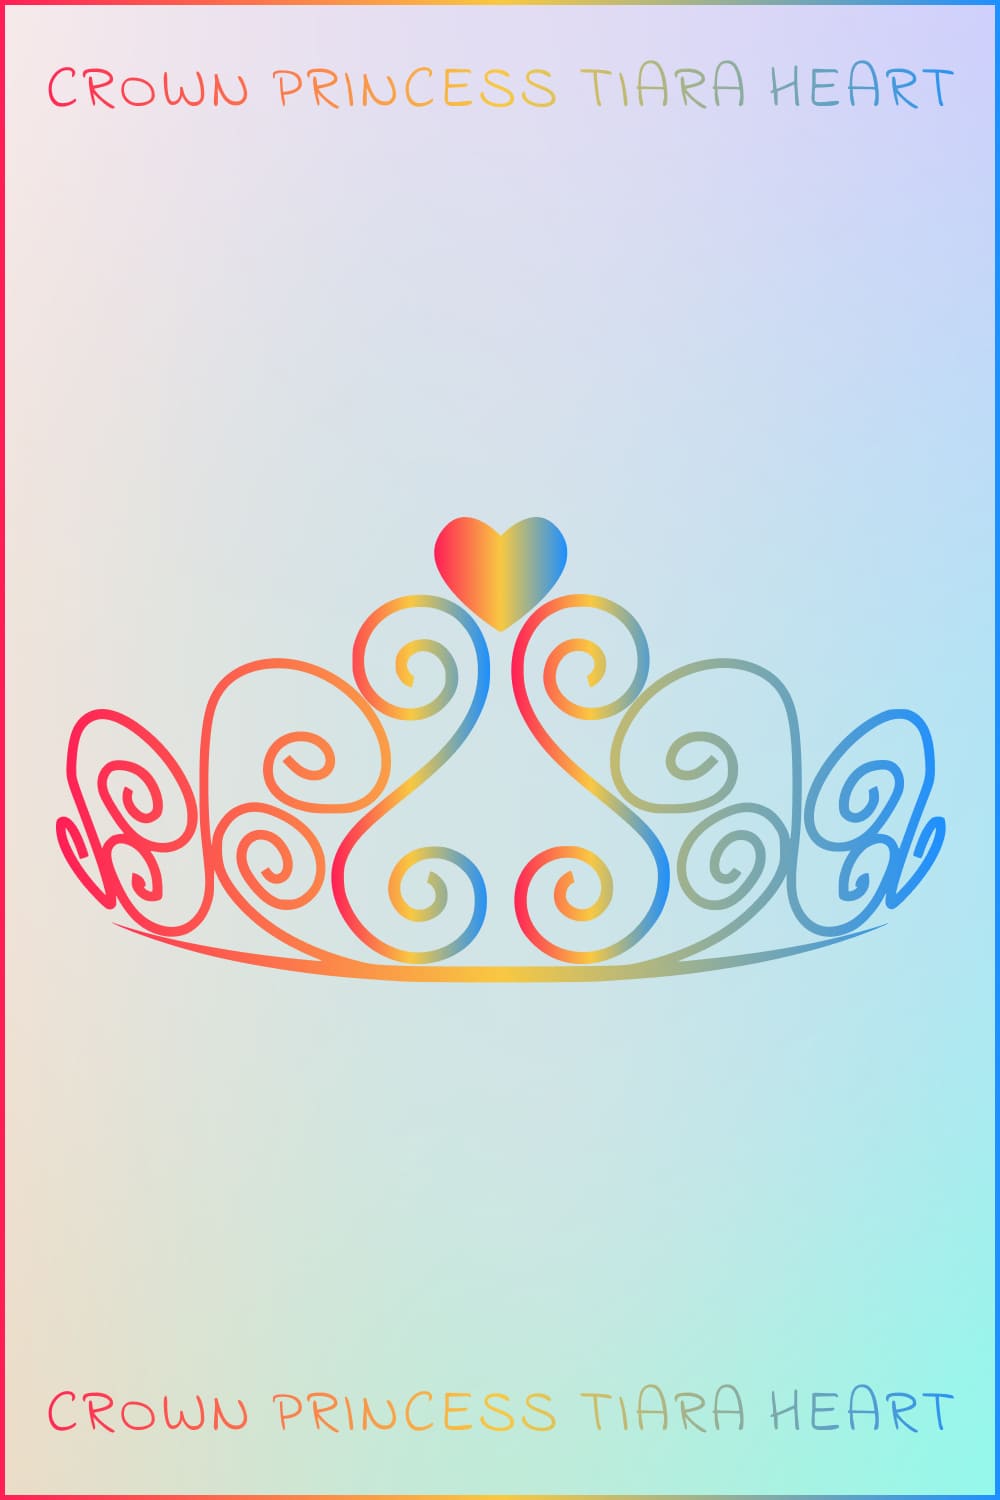 0Crown Princess Tiara Heart Pinterest preview.